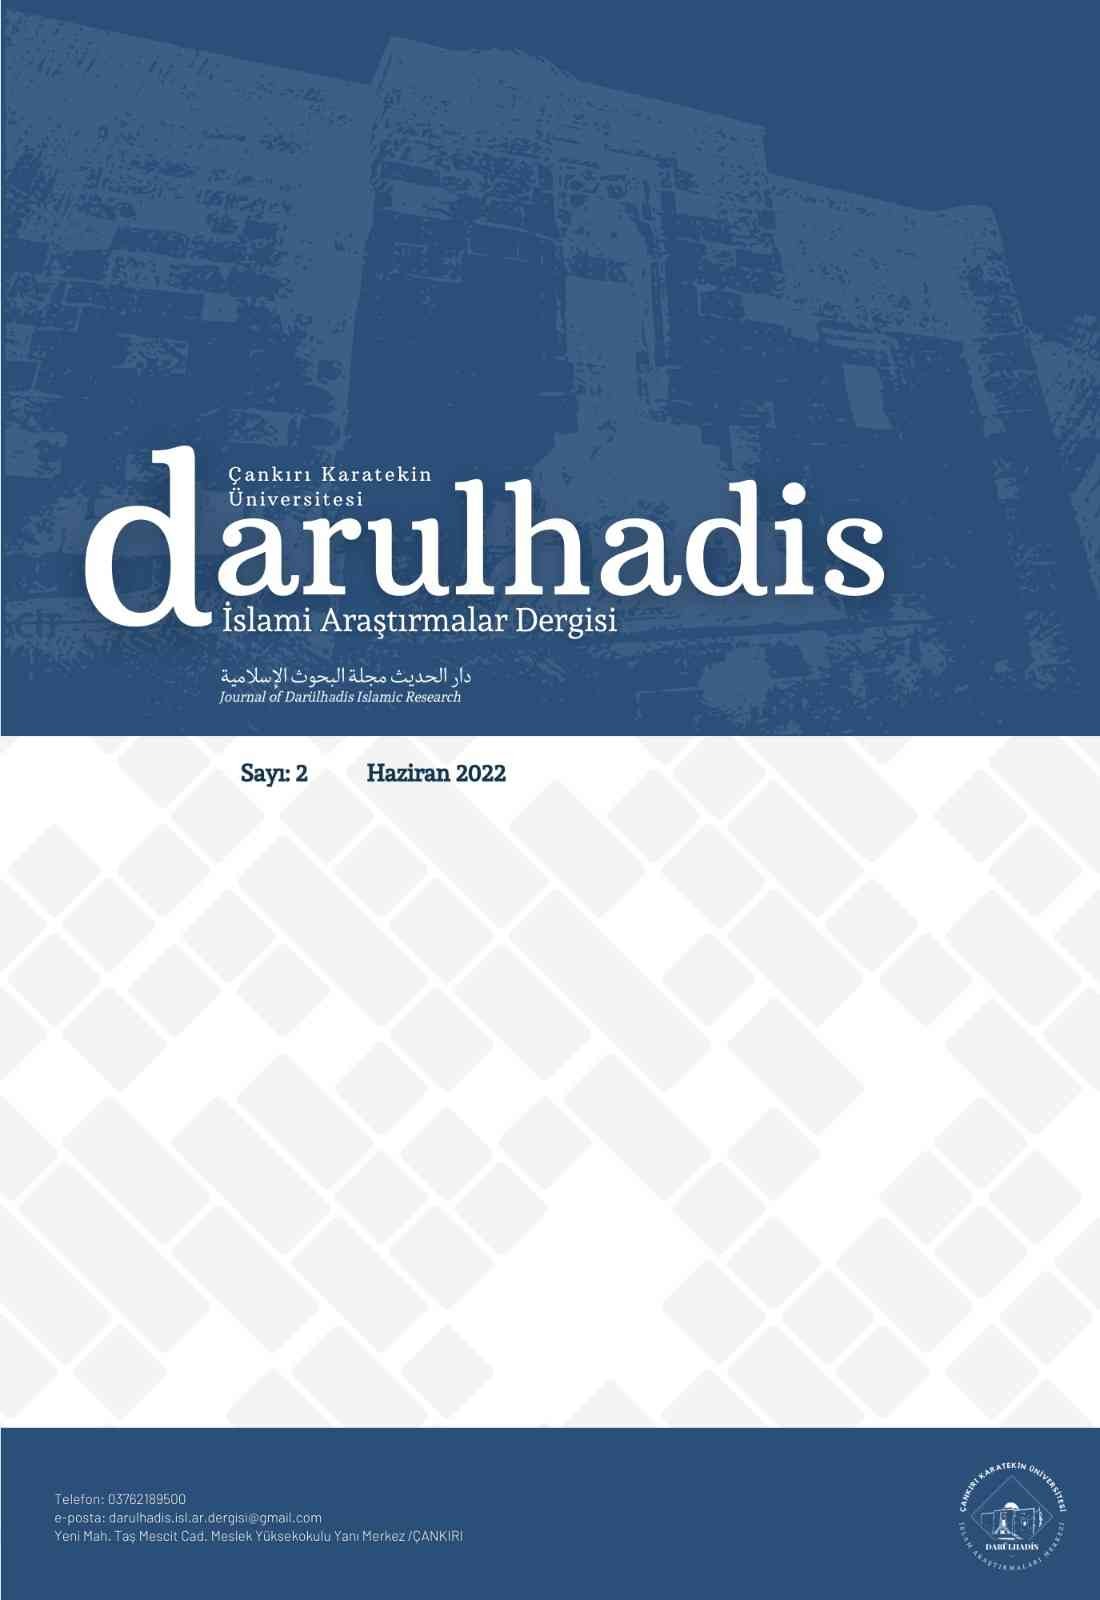 Darülhadis İslami Araştırmaları Dergisi’nin 2. sayısı yayımlandı